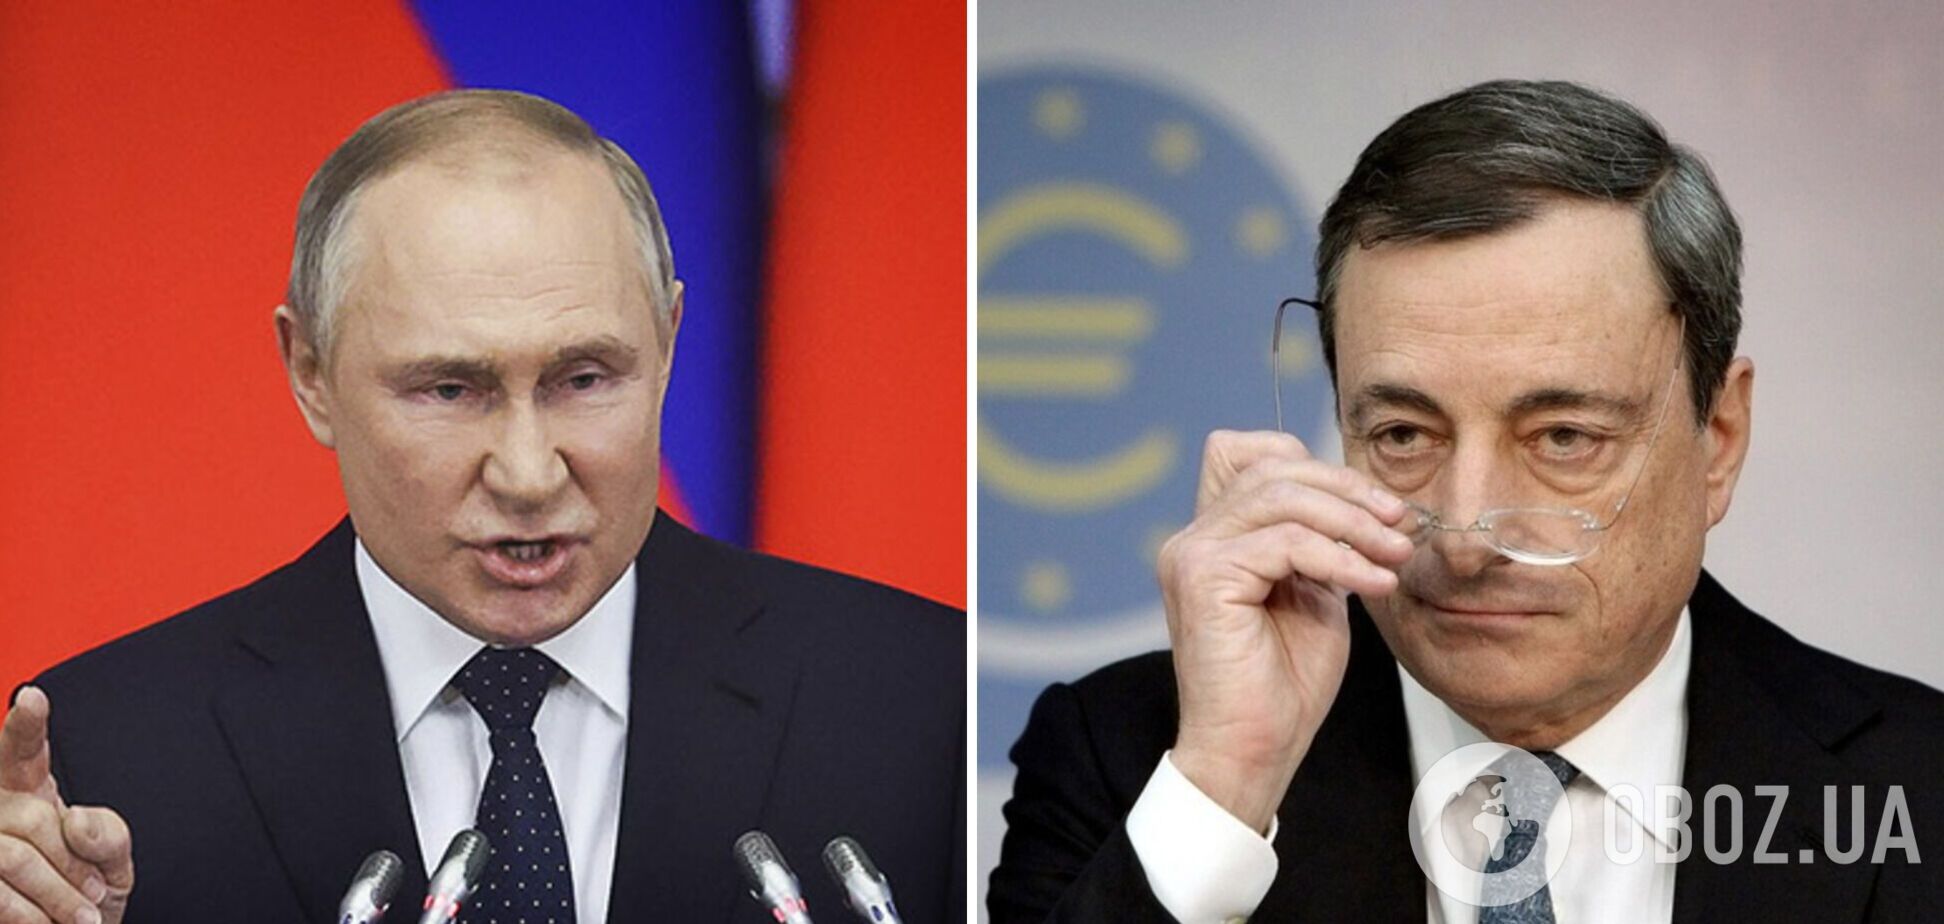 Премьер Италии поговорил с Путиным и заявил, что 'не увидел надежды на мир'